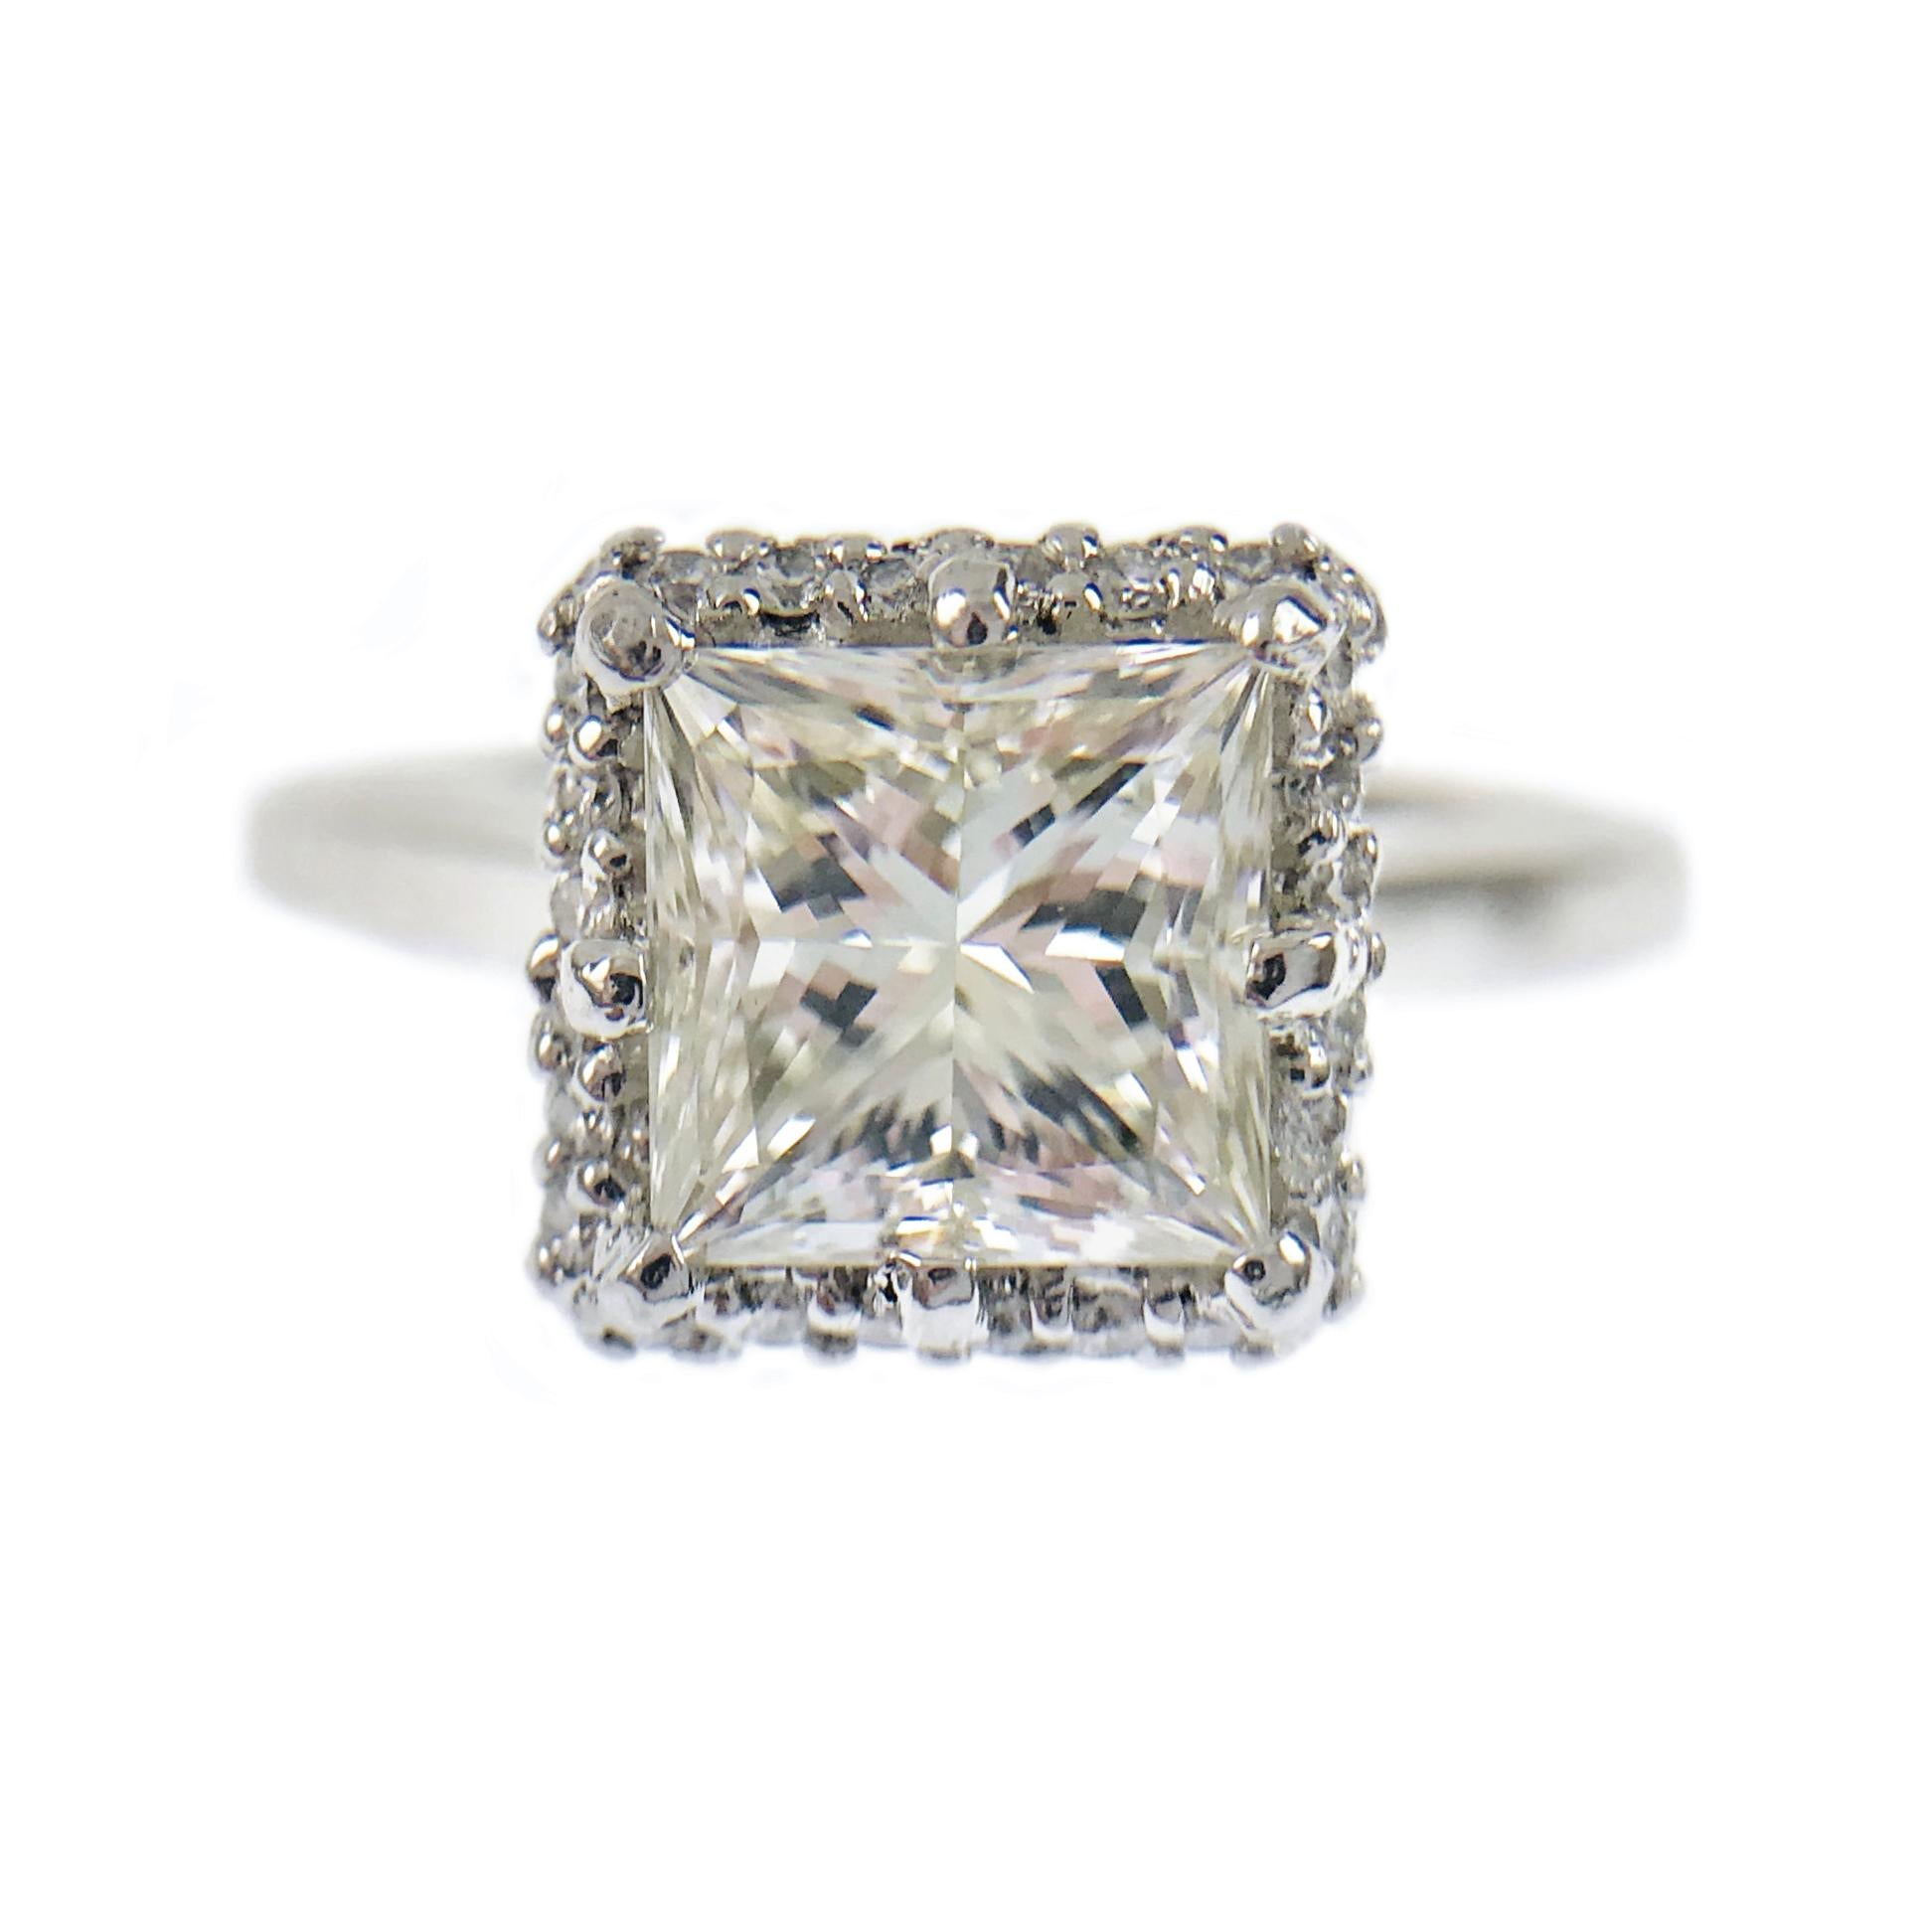 Superbe bague de fiançailles Tacori en platine avec diamant taille princesse. Le diamant central est certifié GIA et pèse 1,59 carat. Le diamant est de pureté VS1 (G.I.A.) et de couleur M (G.I.A.). La taille de la bague est de 6 1/2. Le poids total